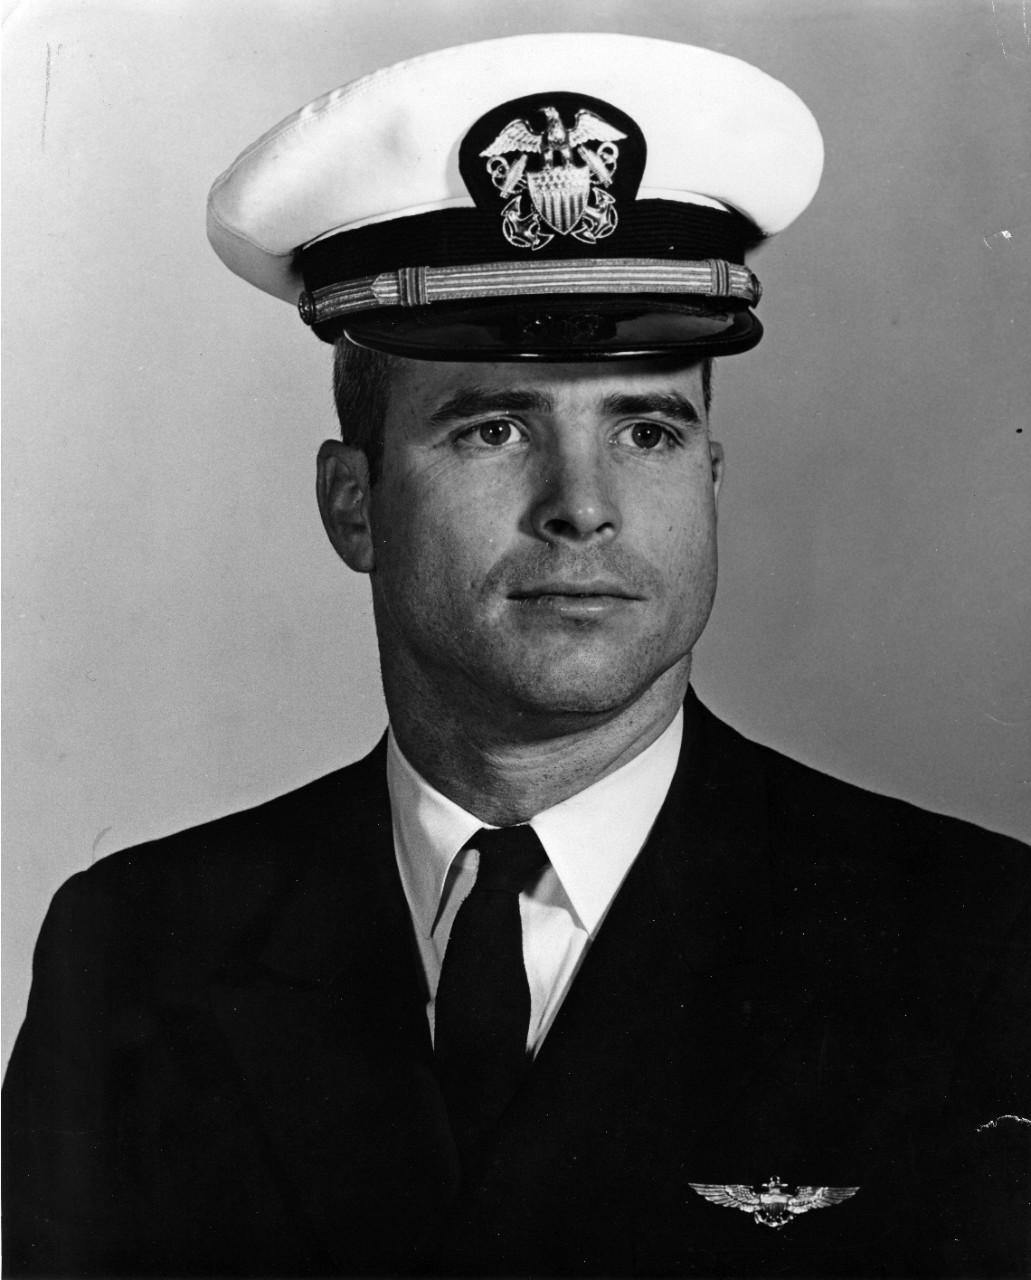 Lieutenant John Sidney McCain III